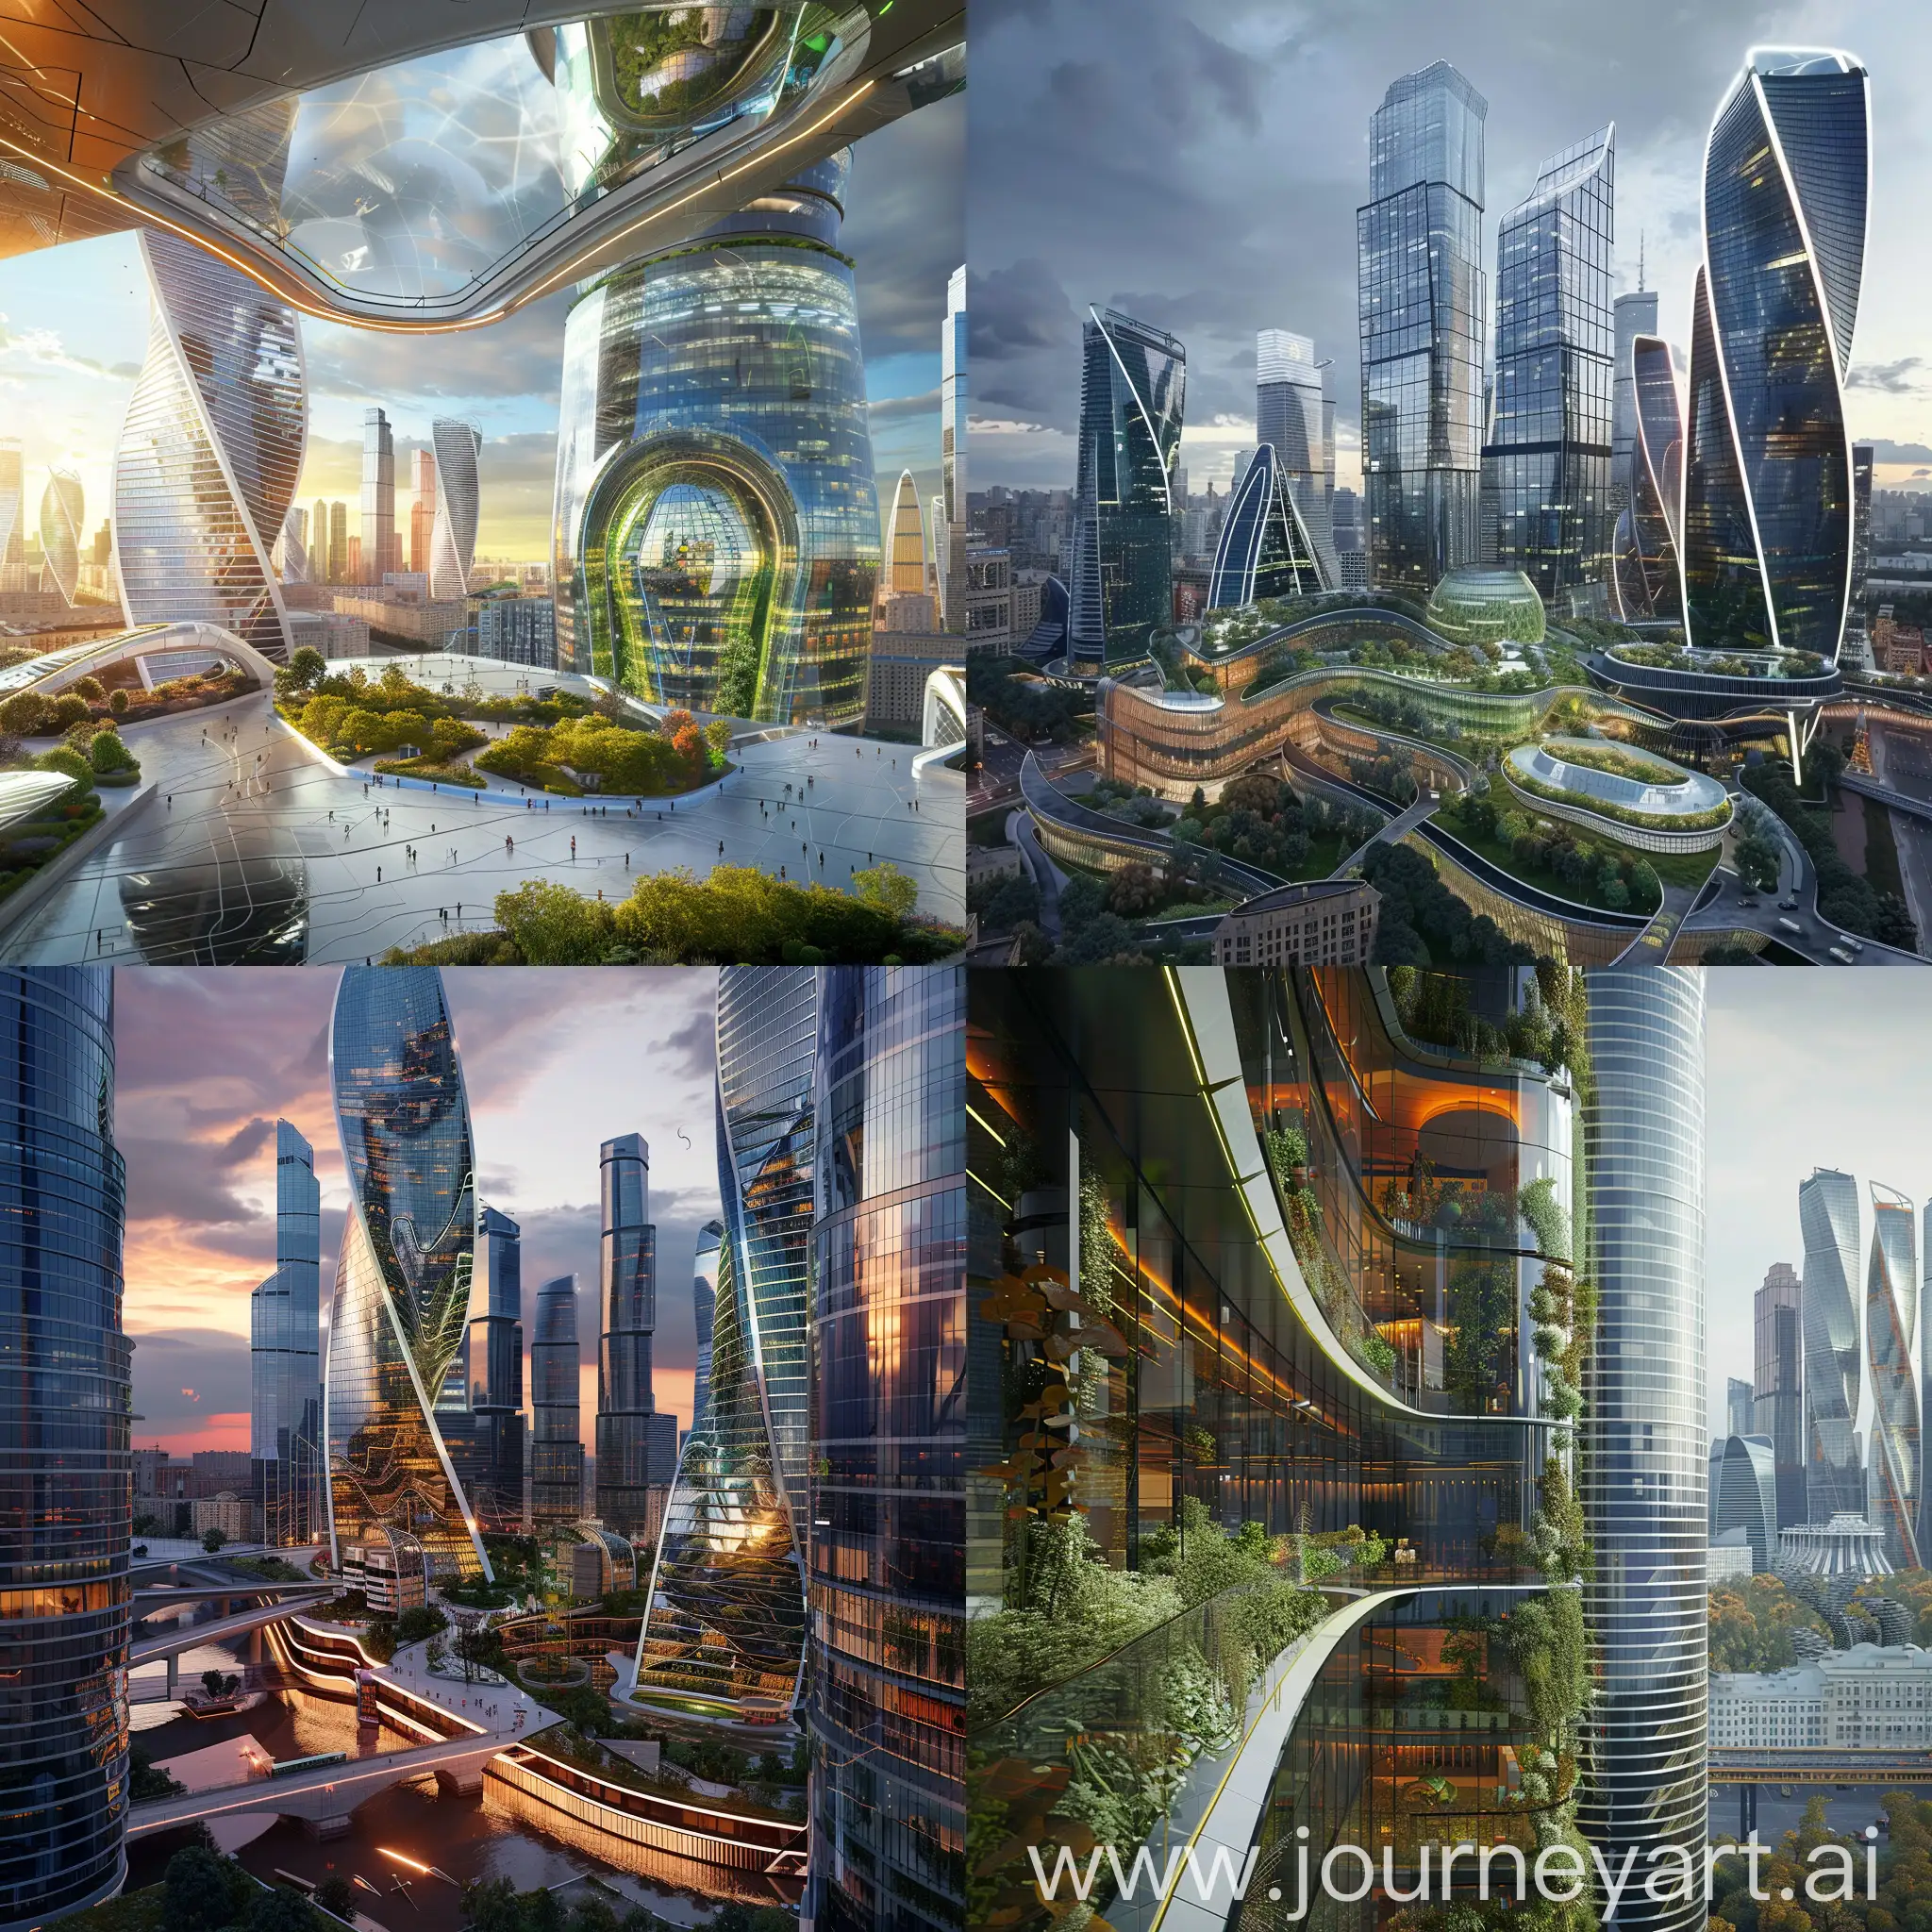 Futuristic-Moscow-with-Smart-Glass-Facades-and-Urban-Farming-Facades